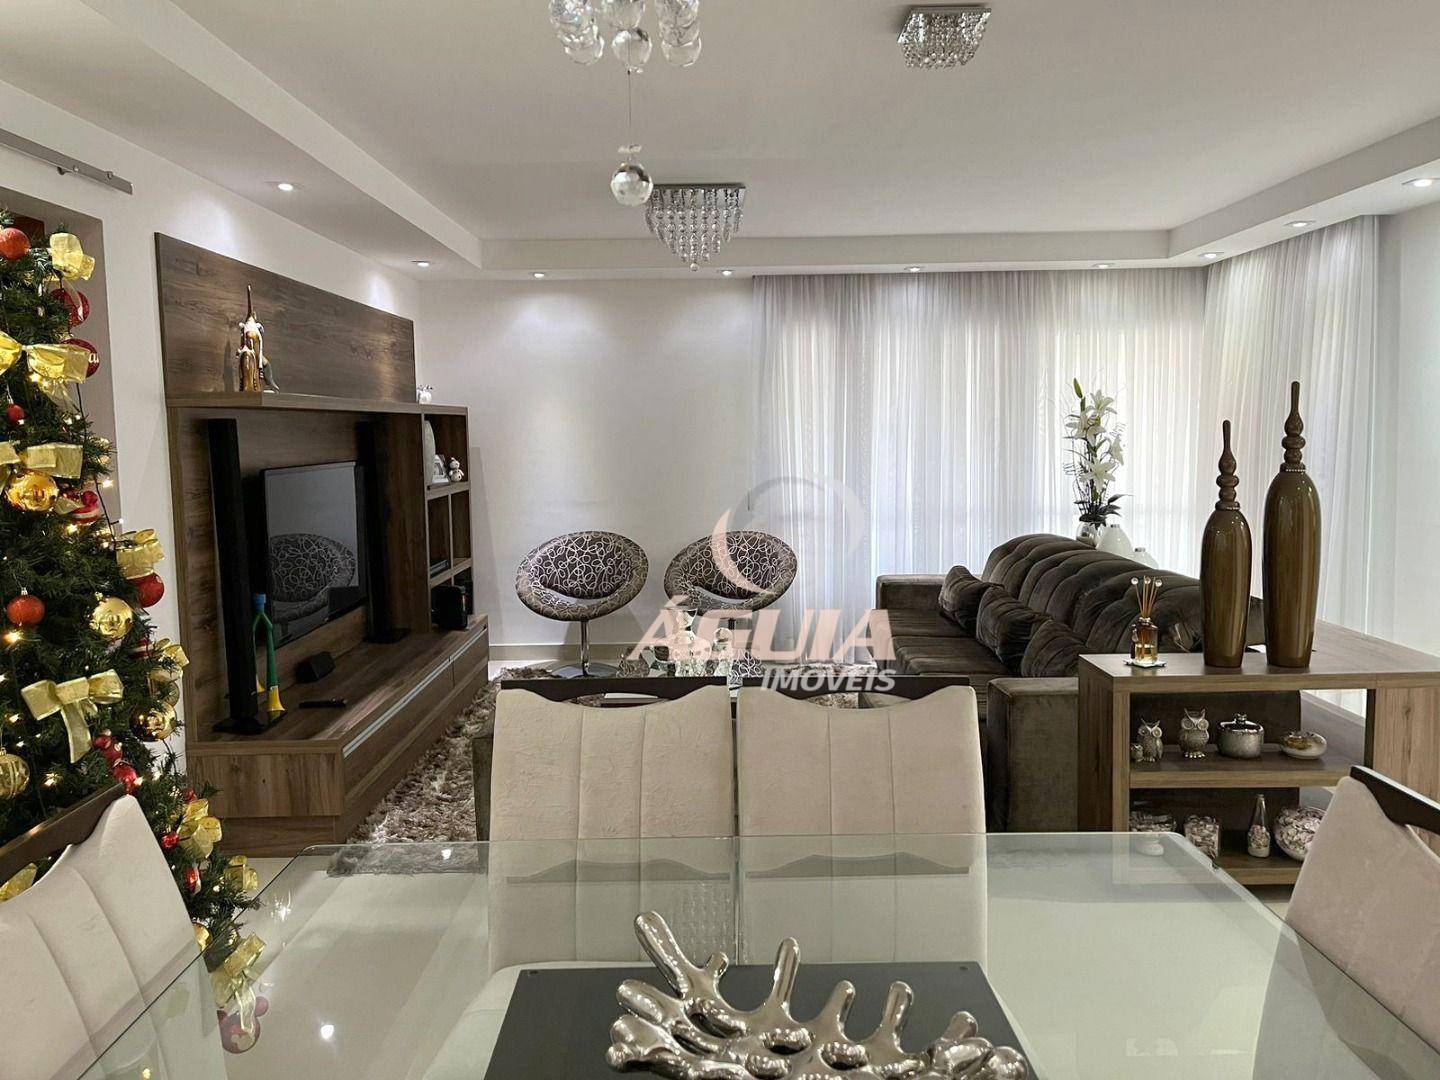 Apartamento com 3 dormitórios 3 suítes à venda, 144 m² por R$ 1.650.000 - Campestre - Santo André/SP